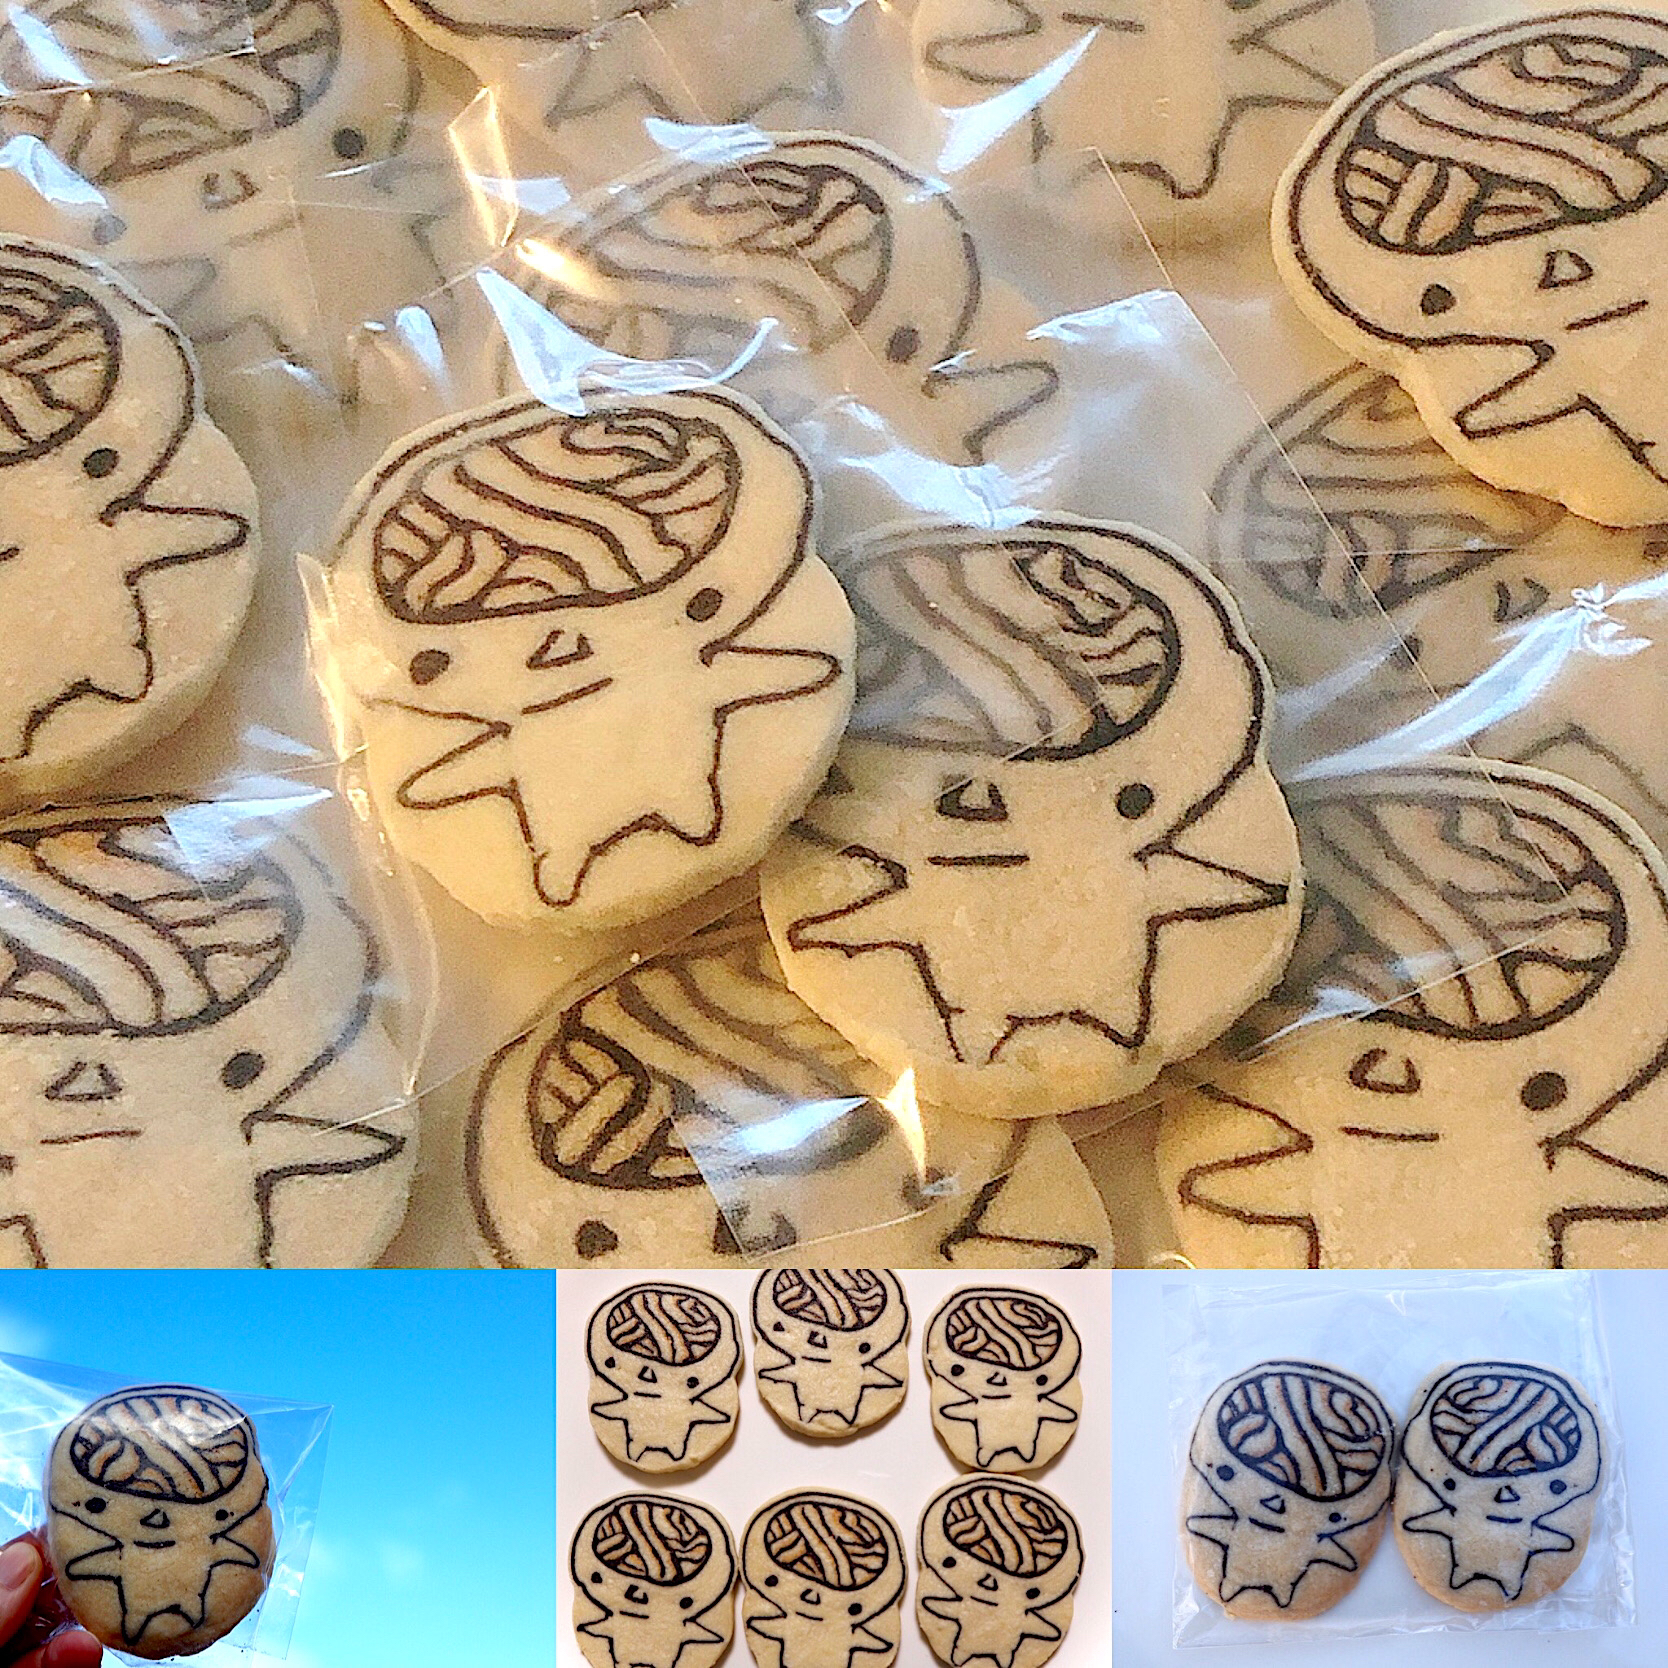 香川県のマスコットキャラクター うどん脳 のアイスボックスクッキーを焼きました Izuyo Snapdish スナップディッシュ Id Anss9a